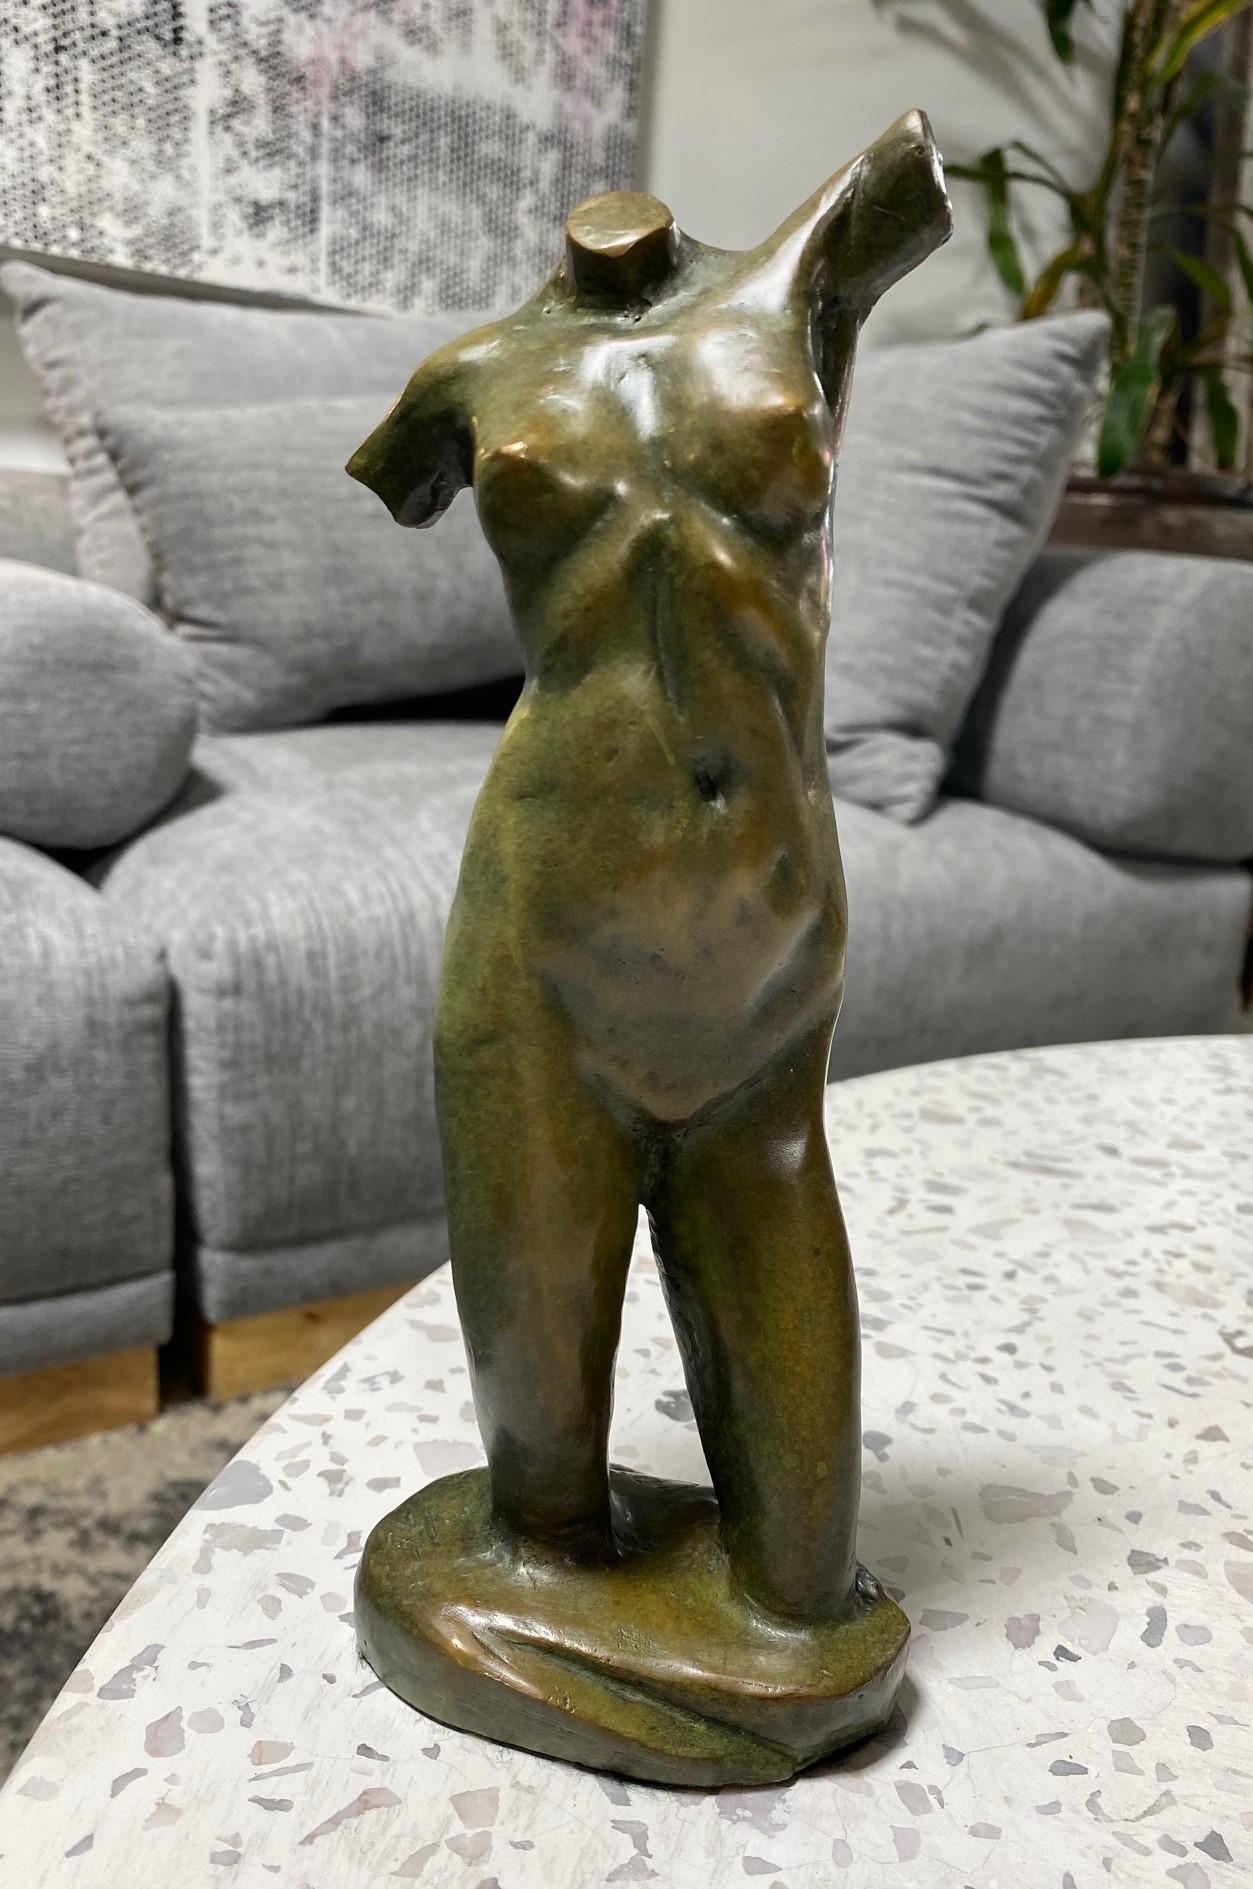 Une œuvre magnifique du célèbre artiste/sculpteur américain Tom Corbin. Cette pièce d'une femme nue figurative est intitulée Reaching Torso et présente une fantastique et riche patine verte/brune. 

L'œuvre à tirage limité est signée, datée (2001)